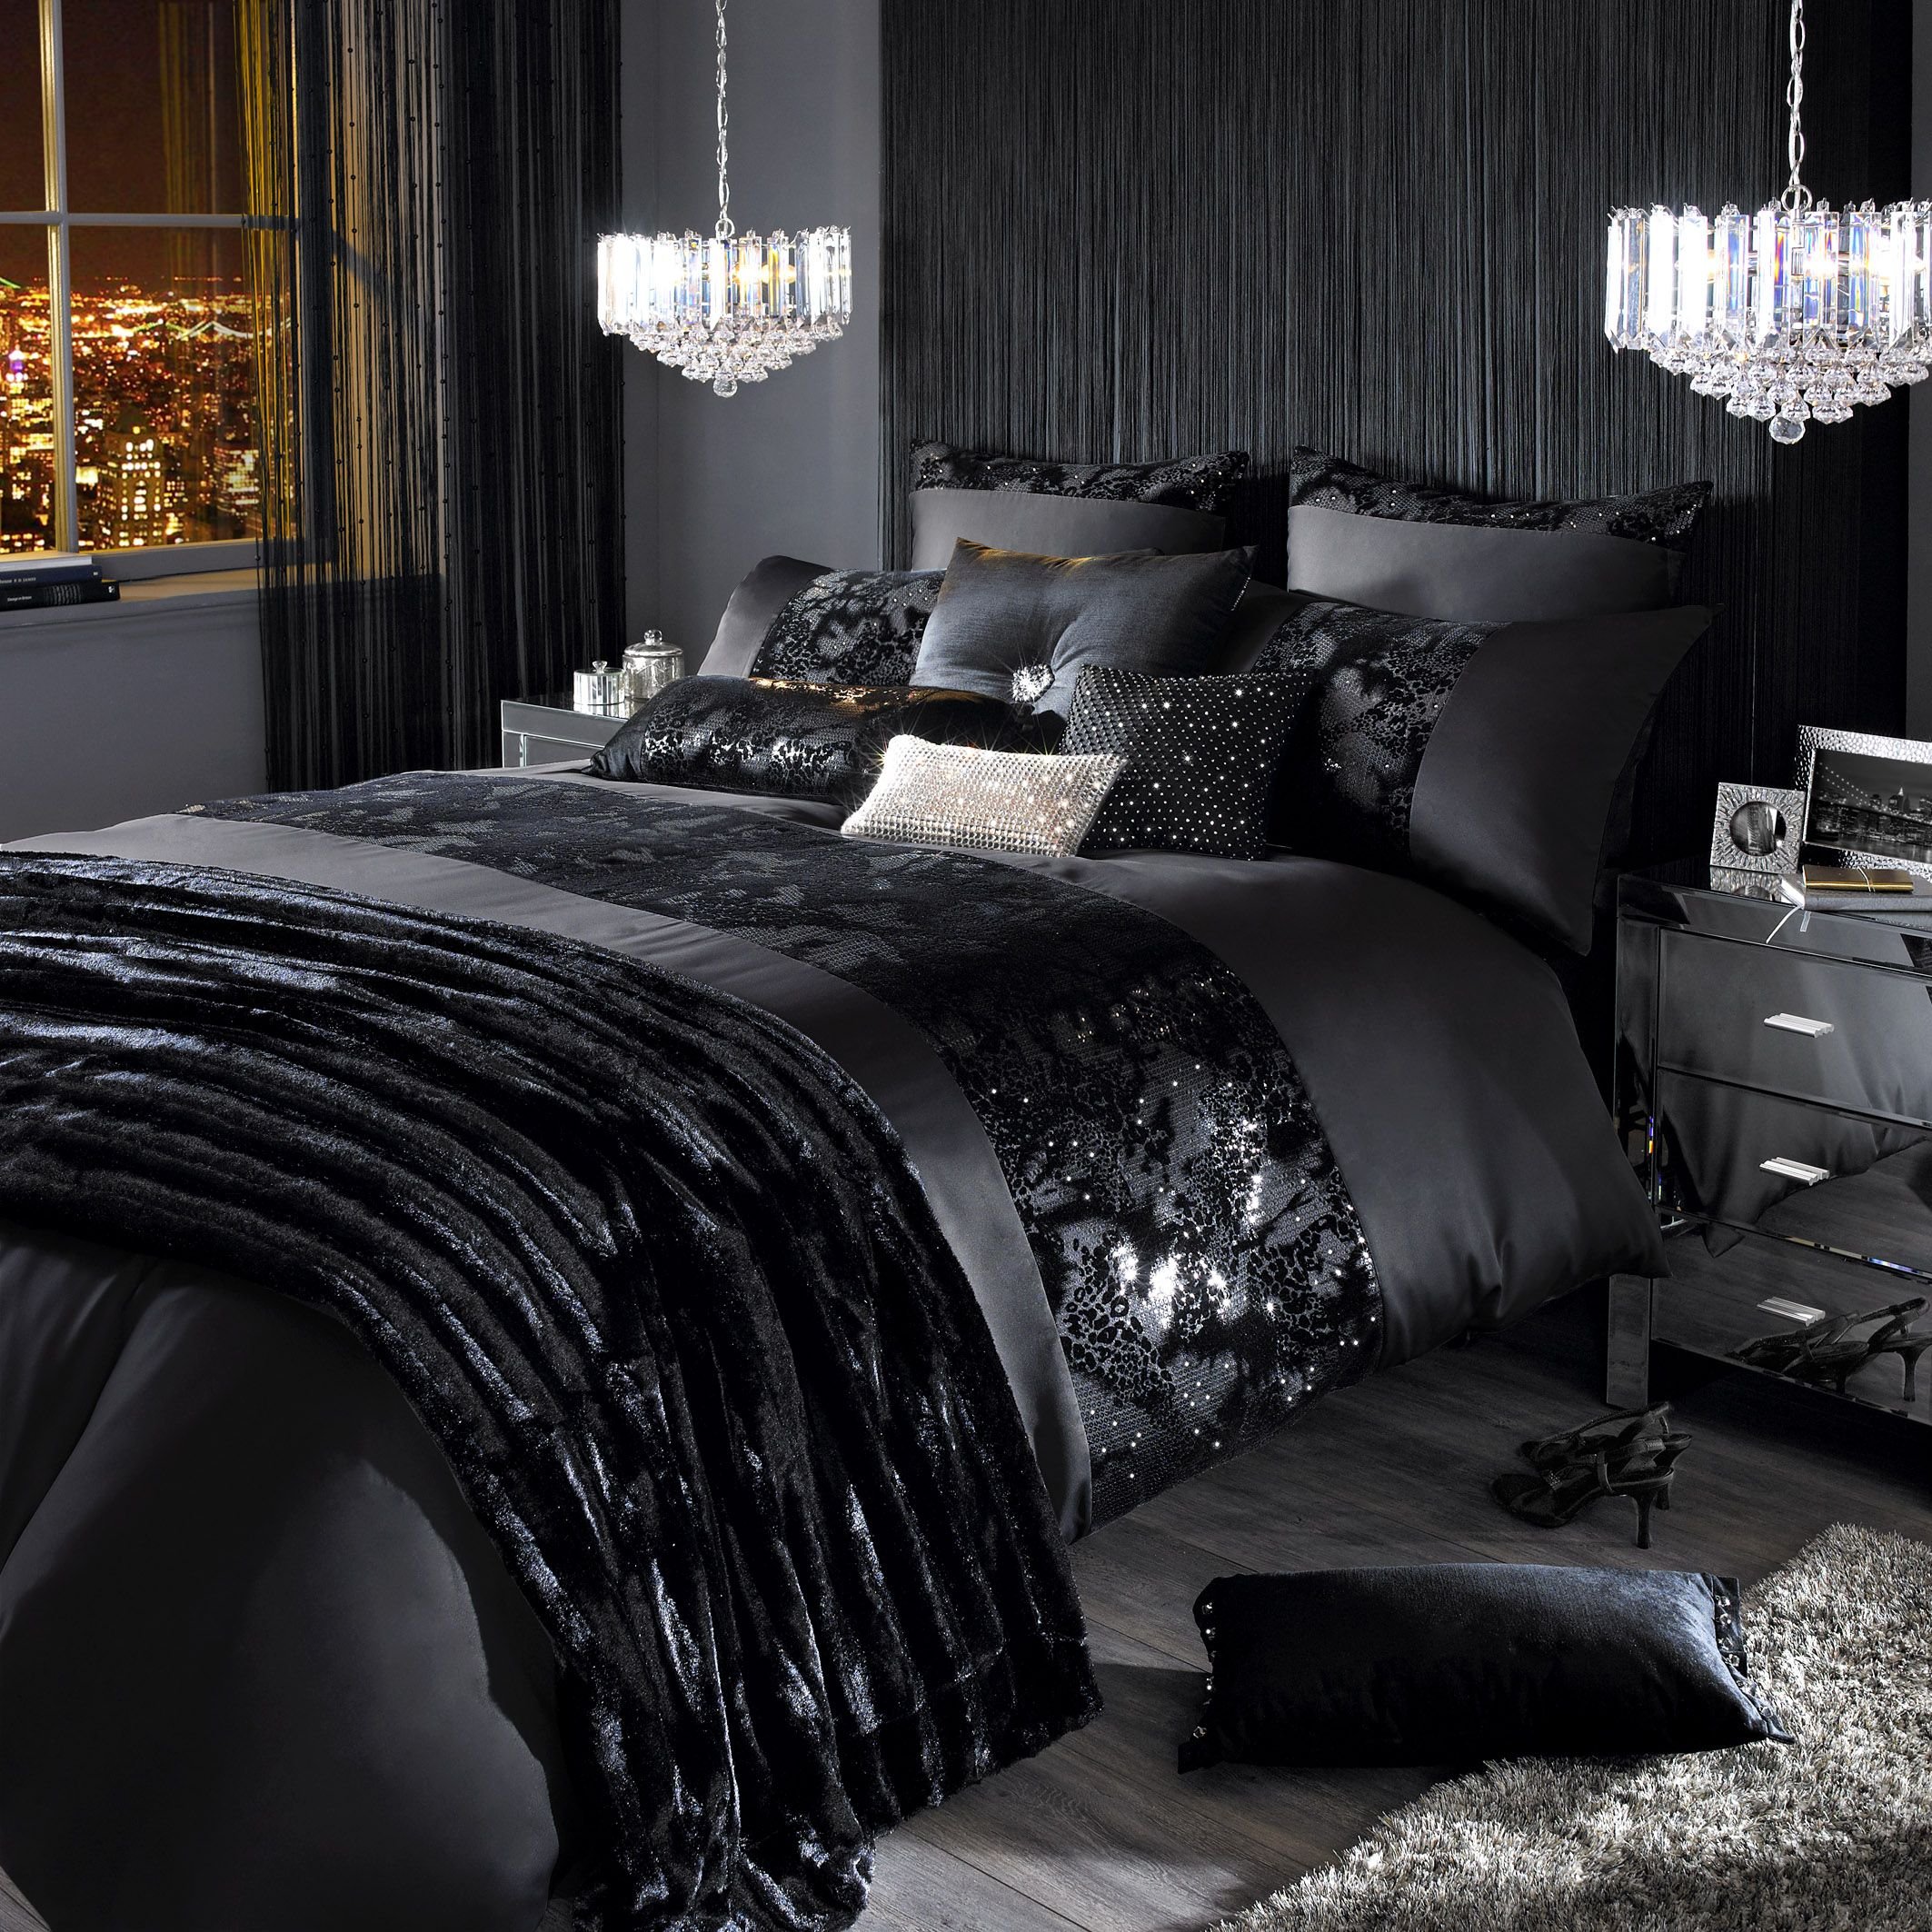 Кровати темного цвета. Постельное бельё luxorious Black Gold. Черная спальня. Черное шелковое постельное белье. Спальня в черном цвете.